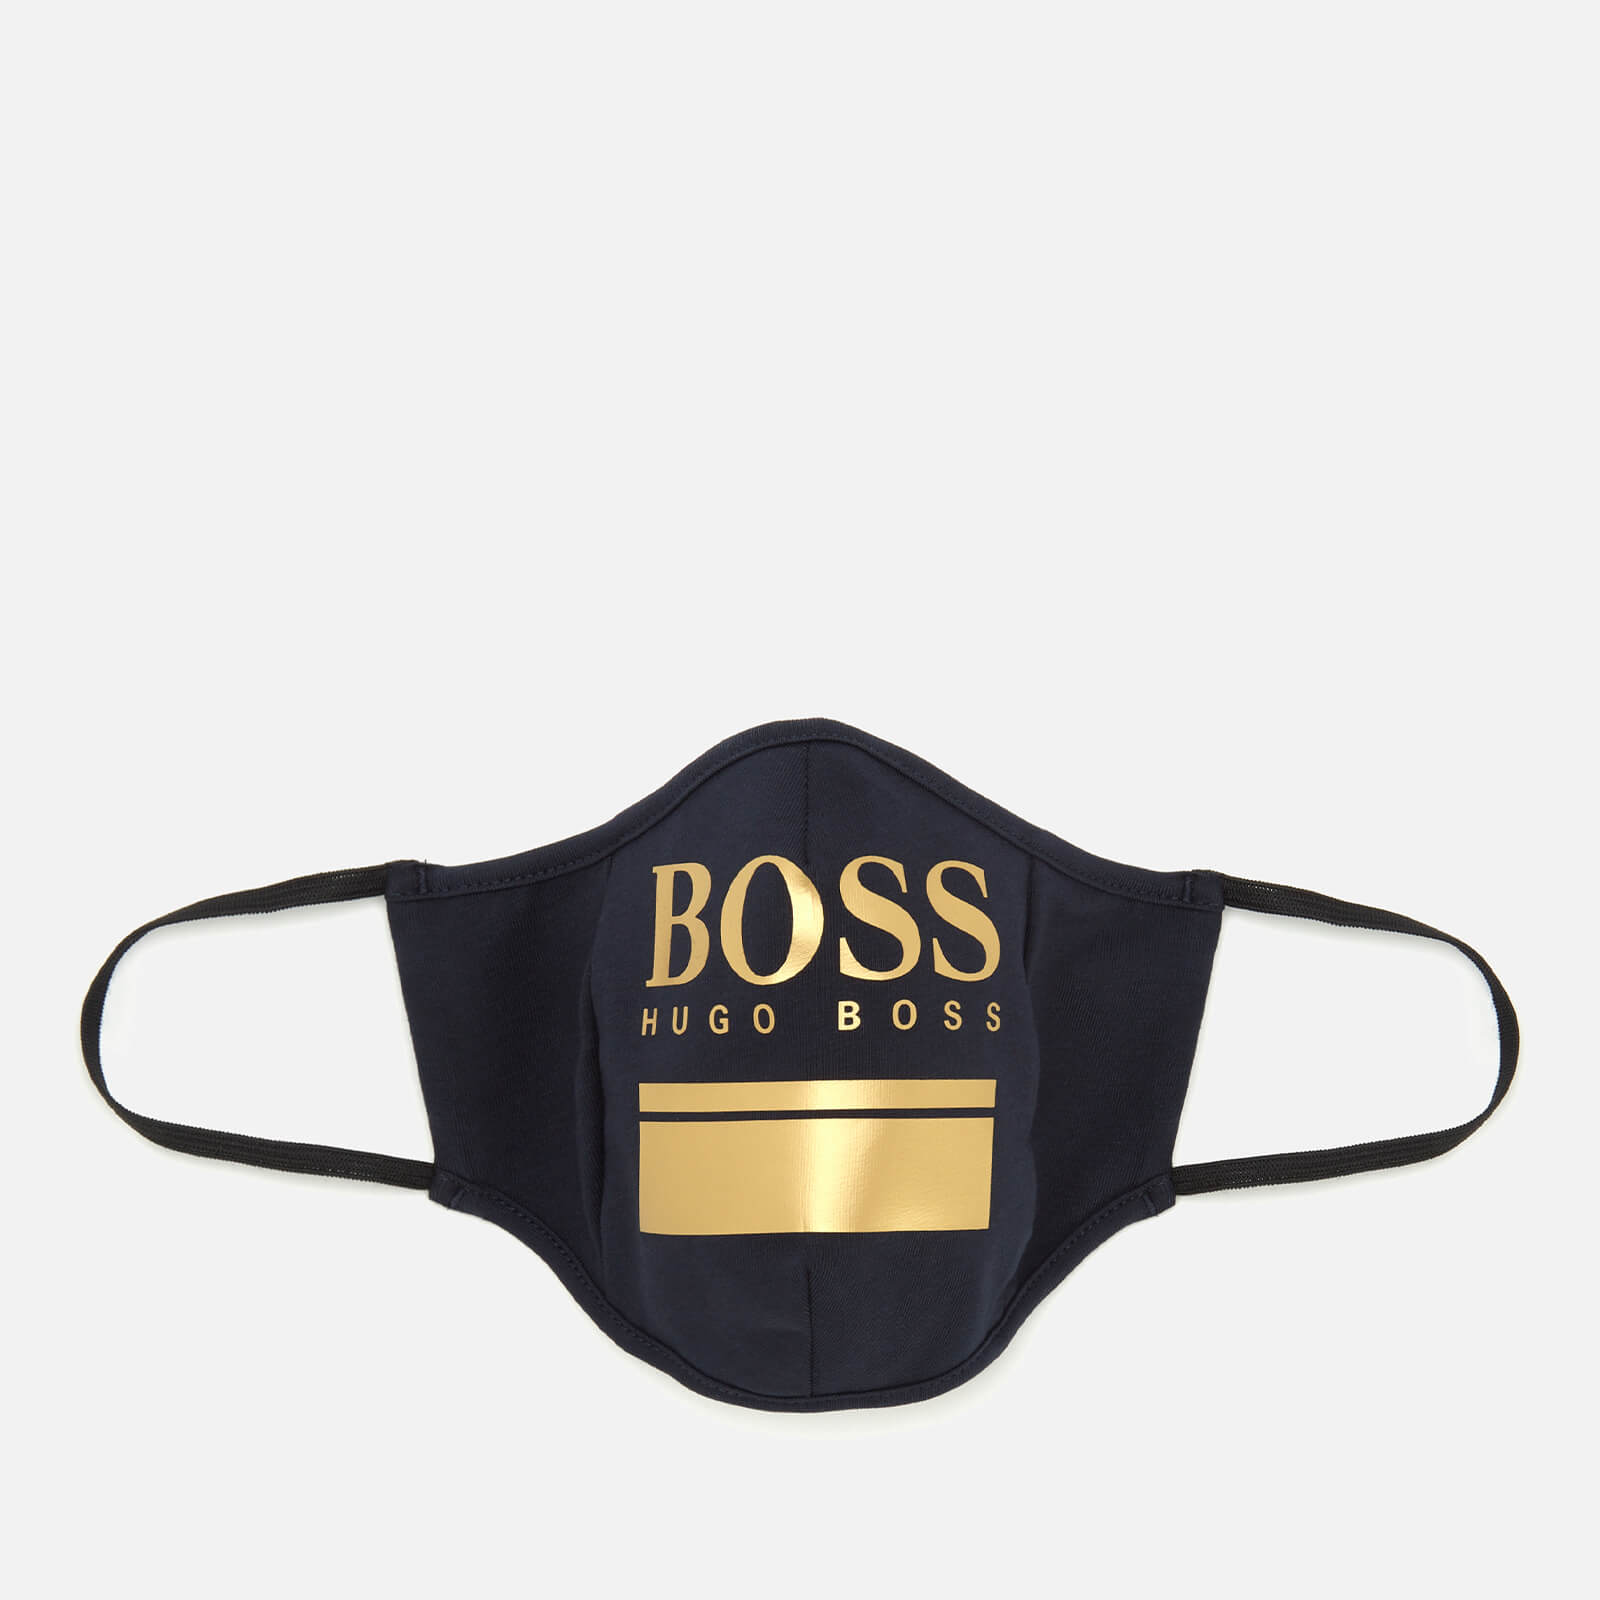 BOSS Hugo Boss Men's Gold Logo Print Face Mask - Navy/Gold - M